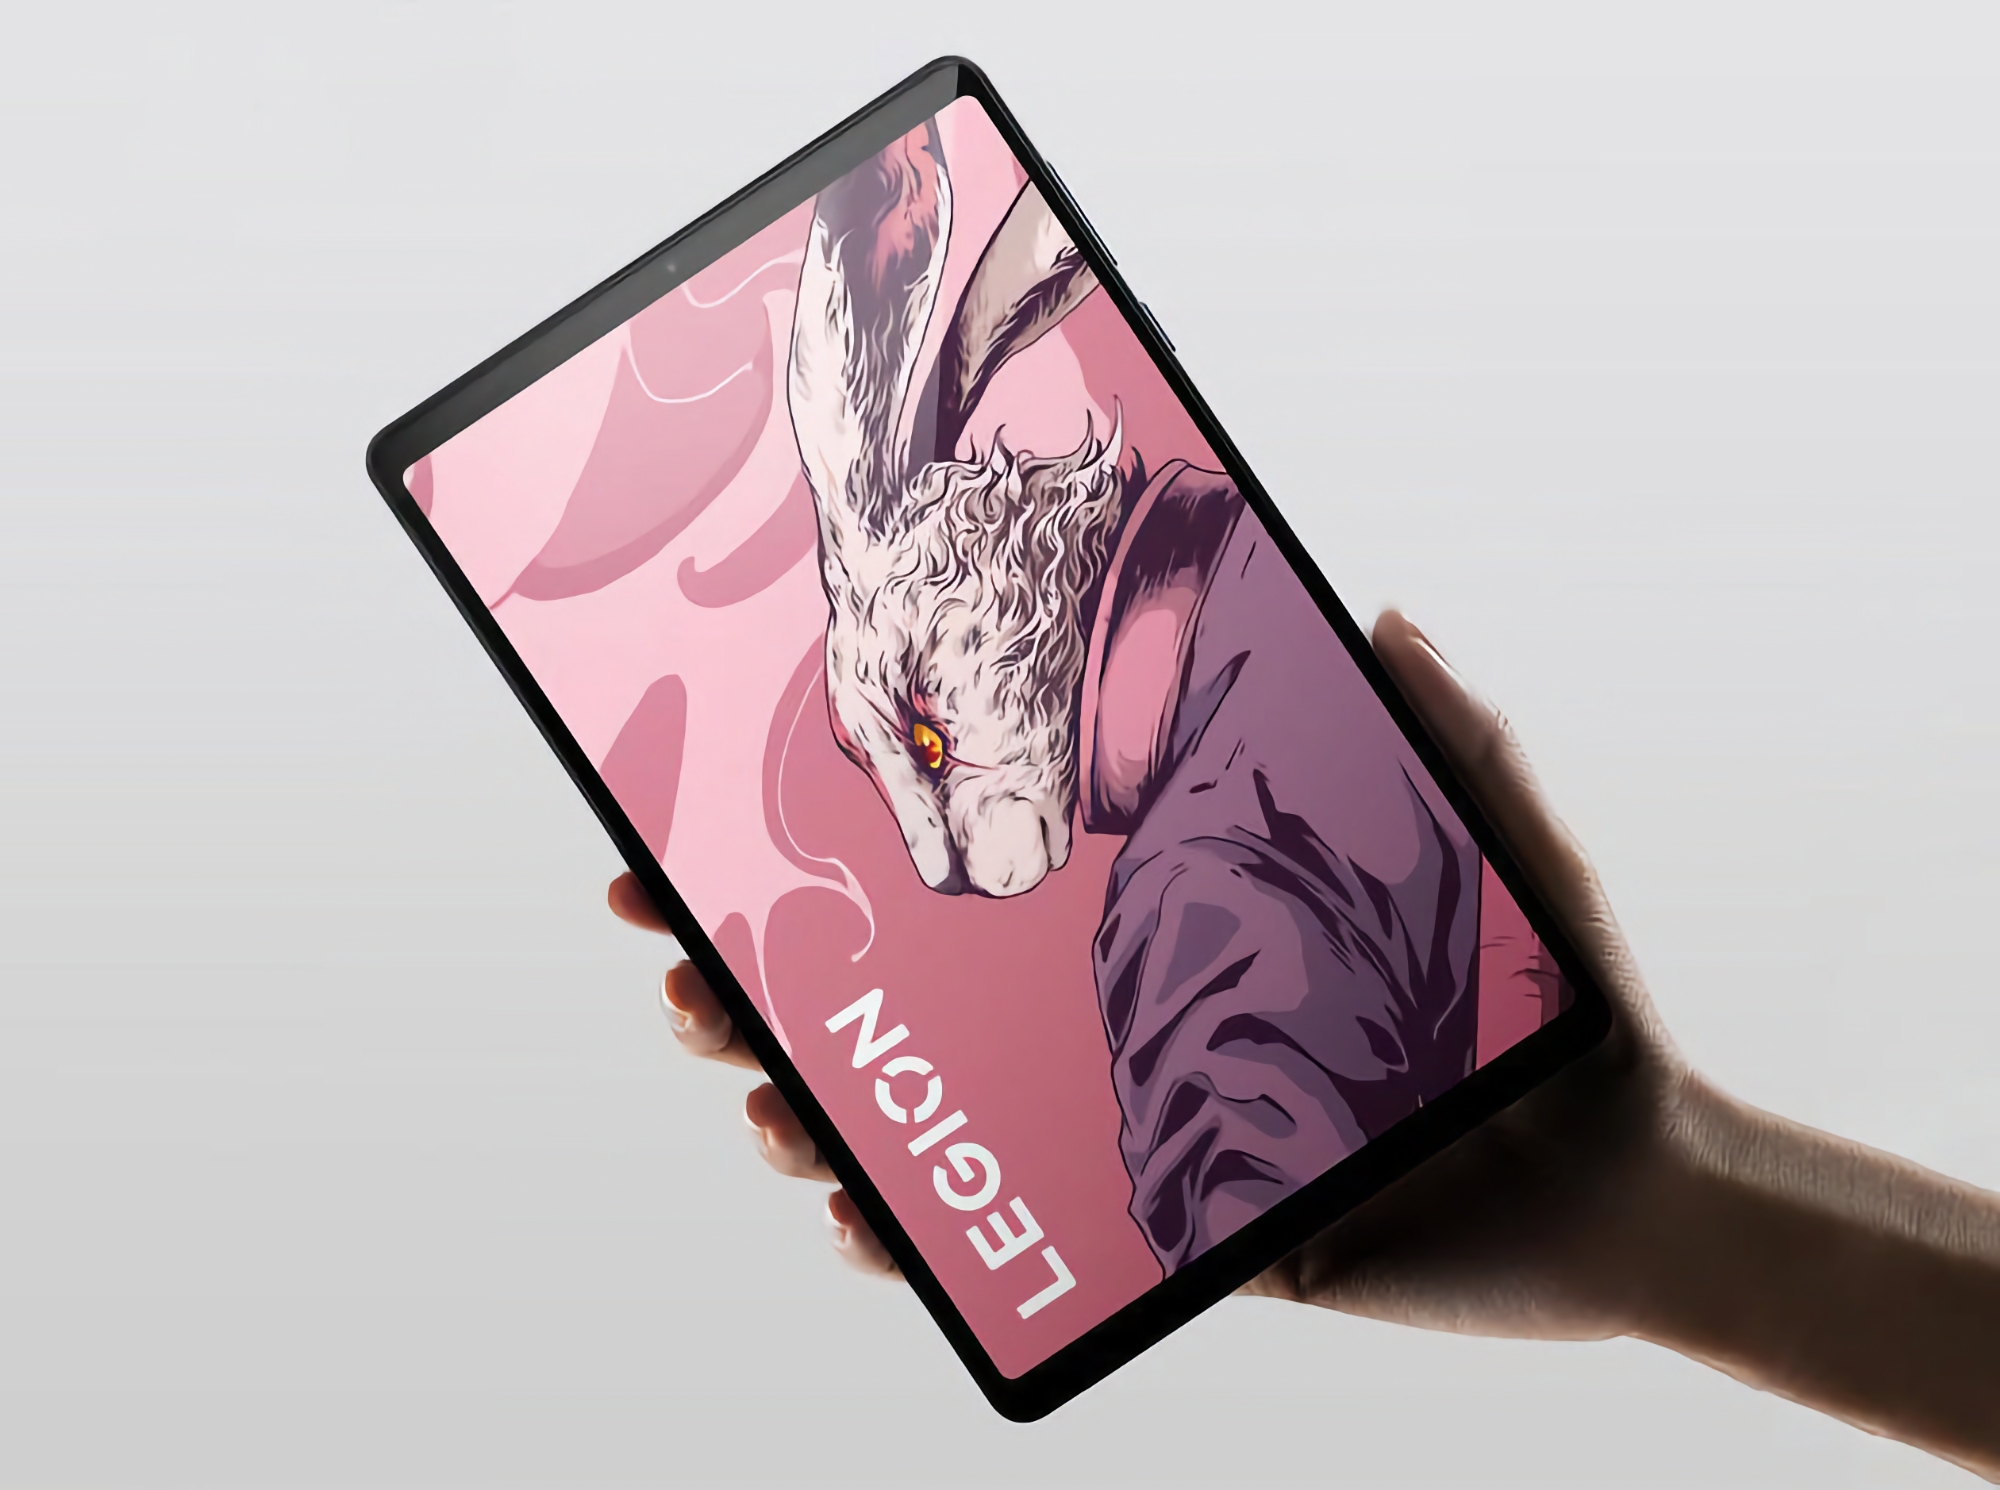 144Hz skærm, Snapdragon 8+ Gen 1 chip og 6550mAh batteri med 45W opladning: specifikationer for Lenovo Legion Y700 (2023) tablet er dukket op online